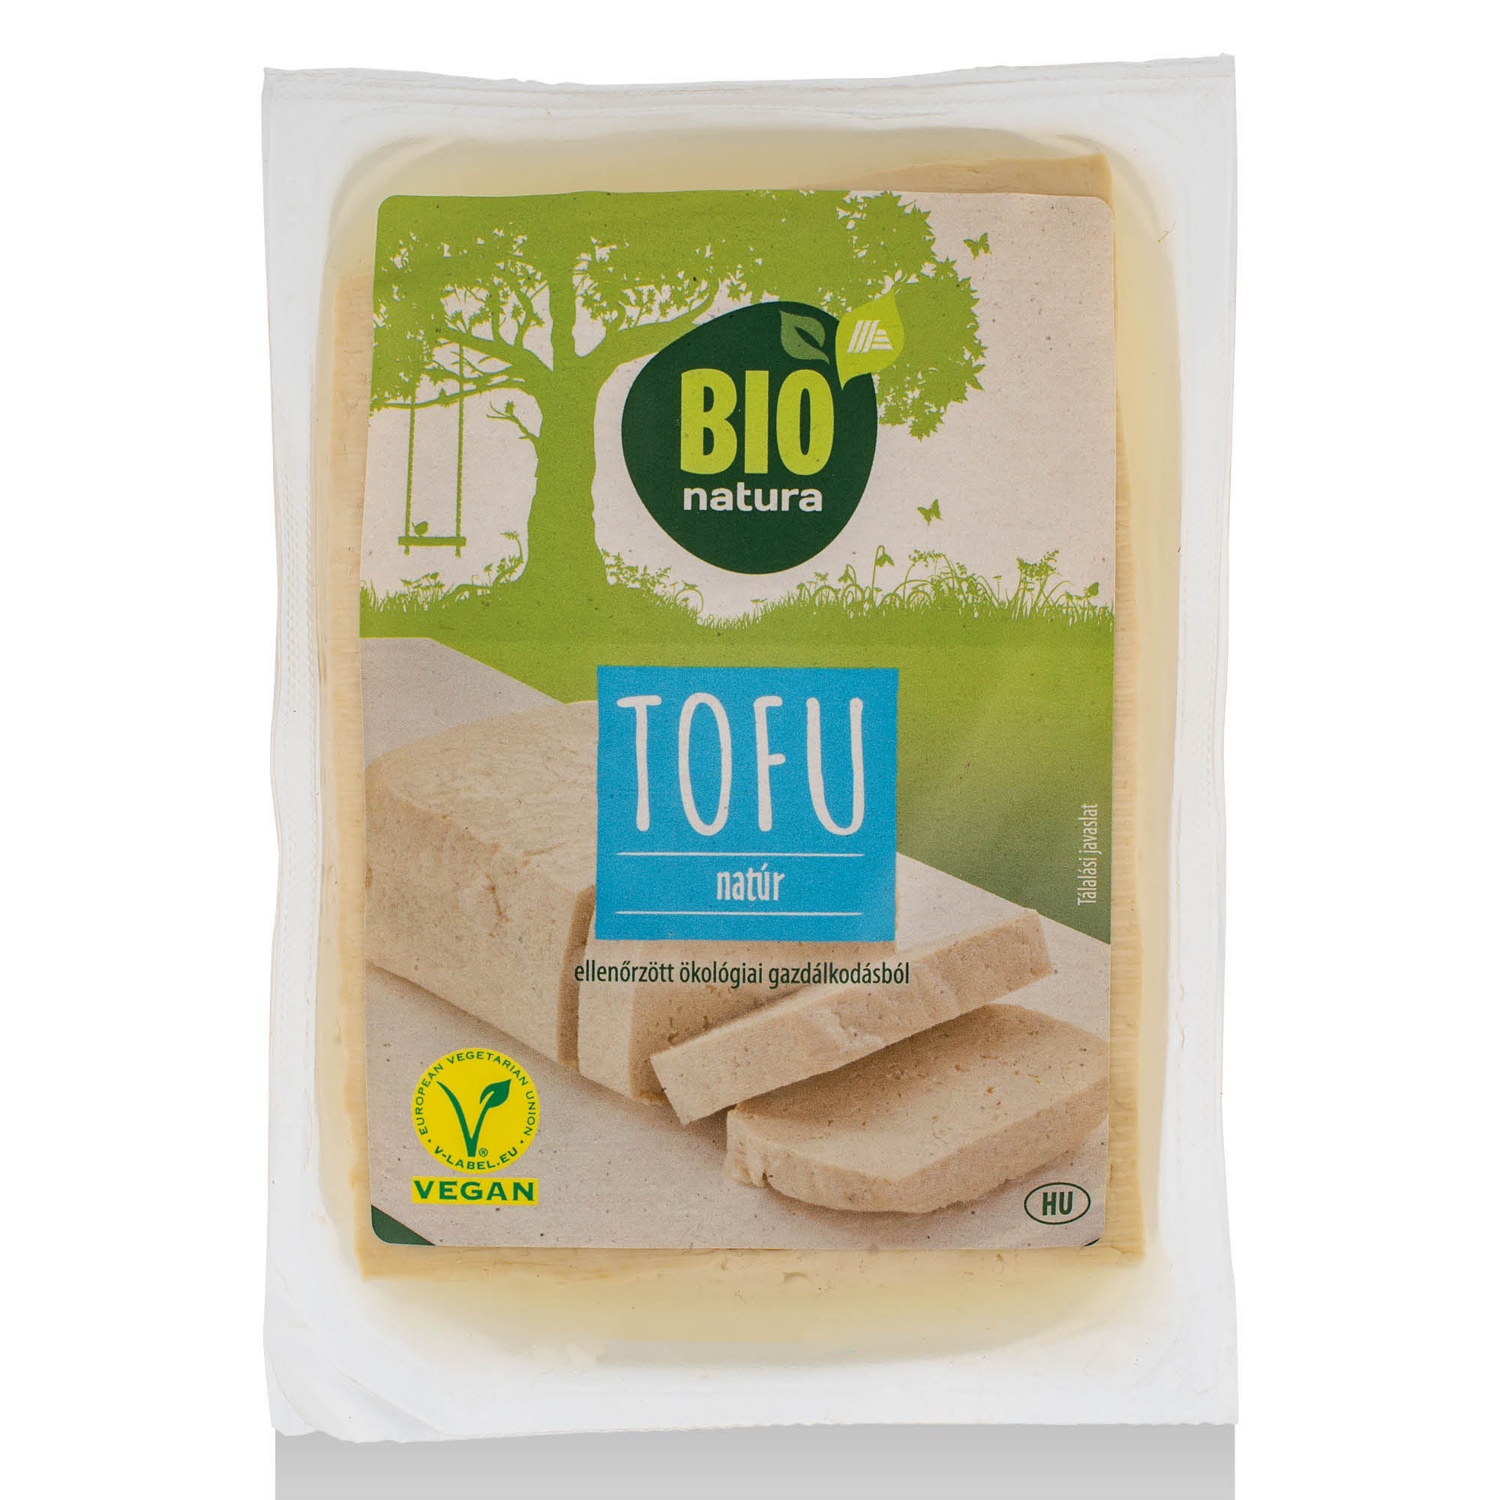 BIO NATURA Bio tofu, natúr, 350 g